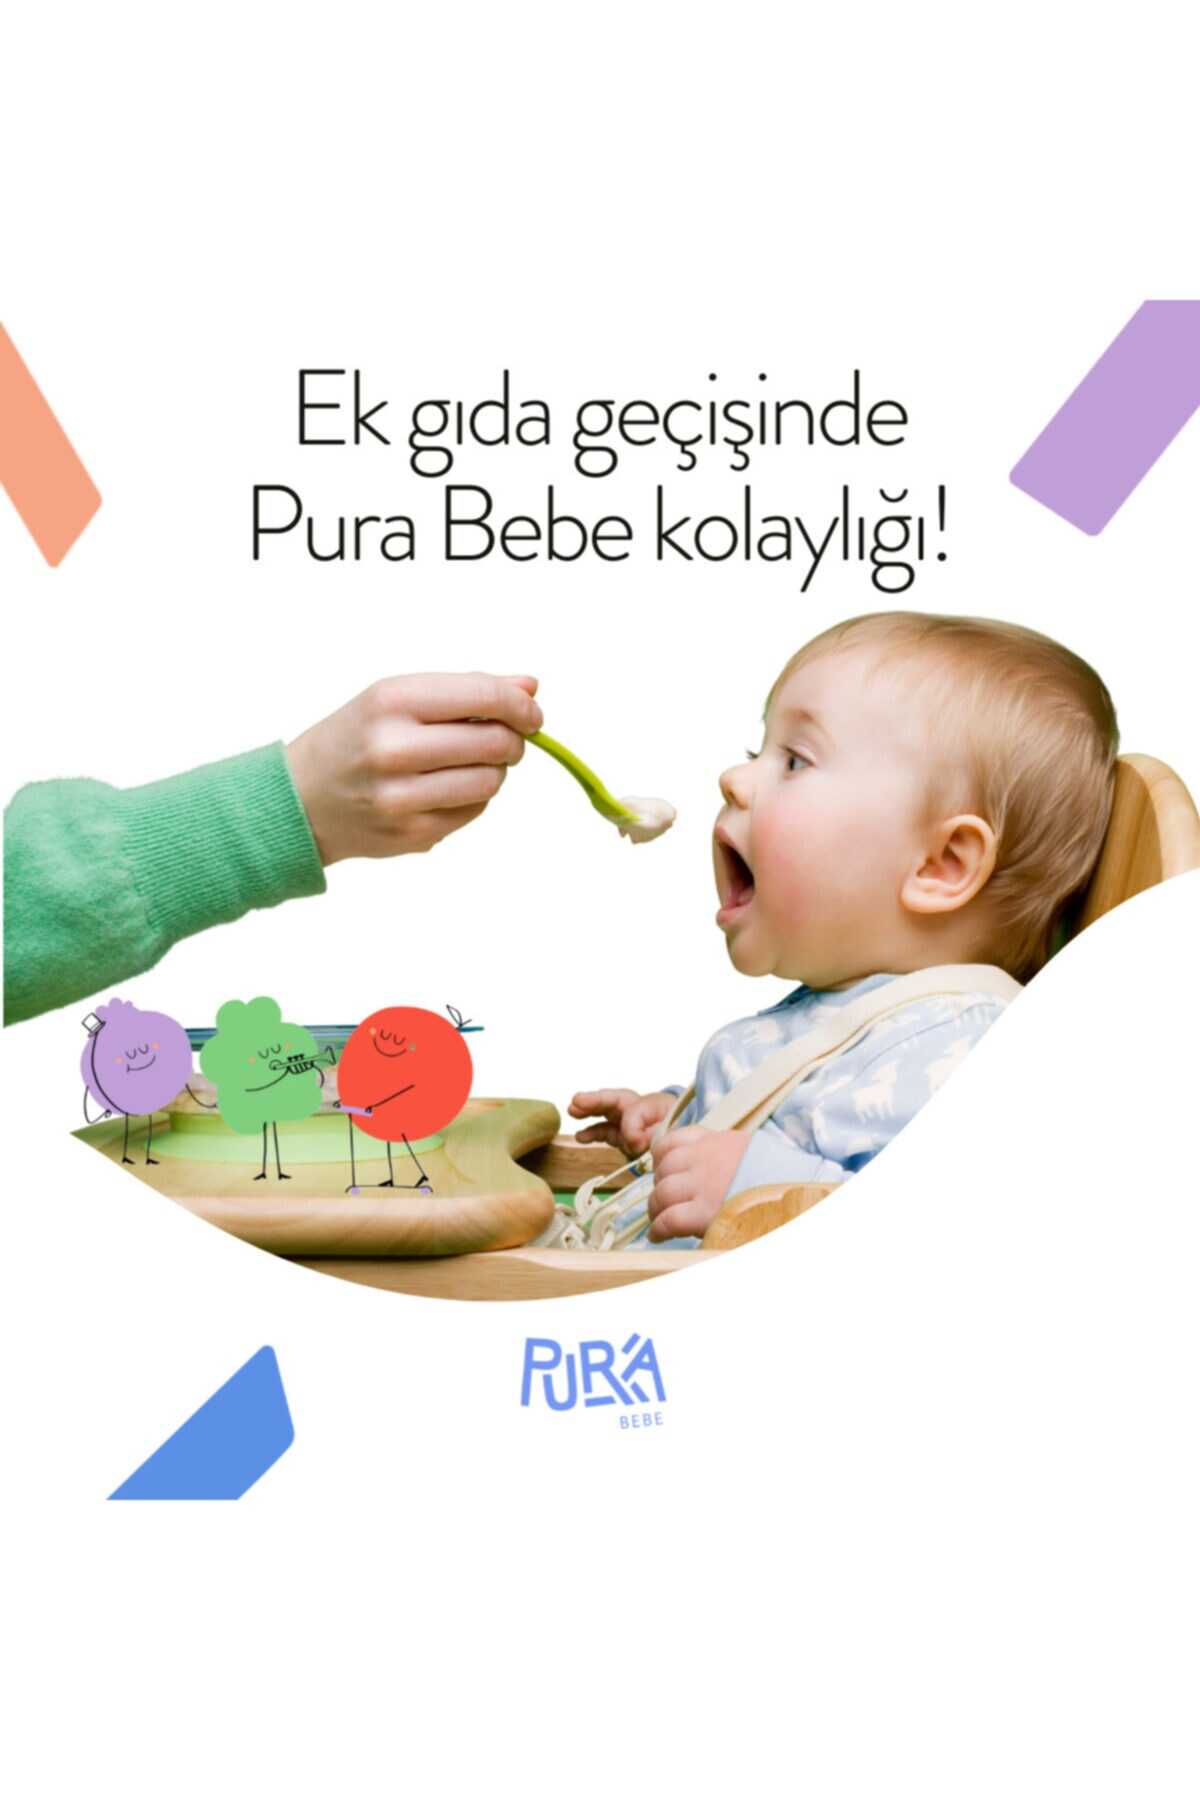 پوره سیب دارچین ارگانیک کودک 4 جعبه (12 قسمت) برند Pura Bebe